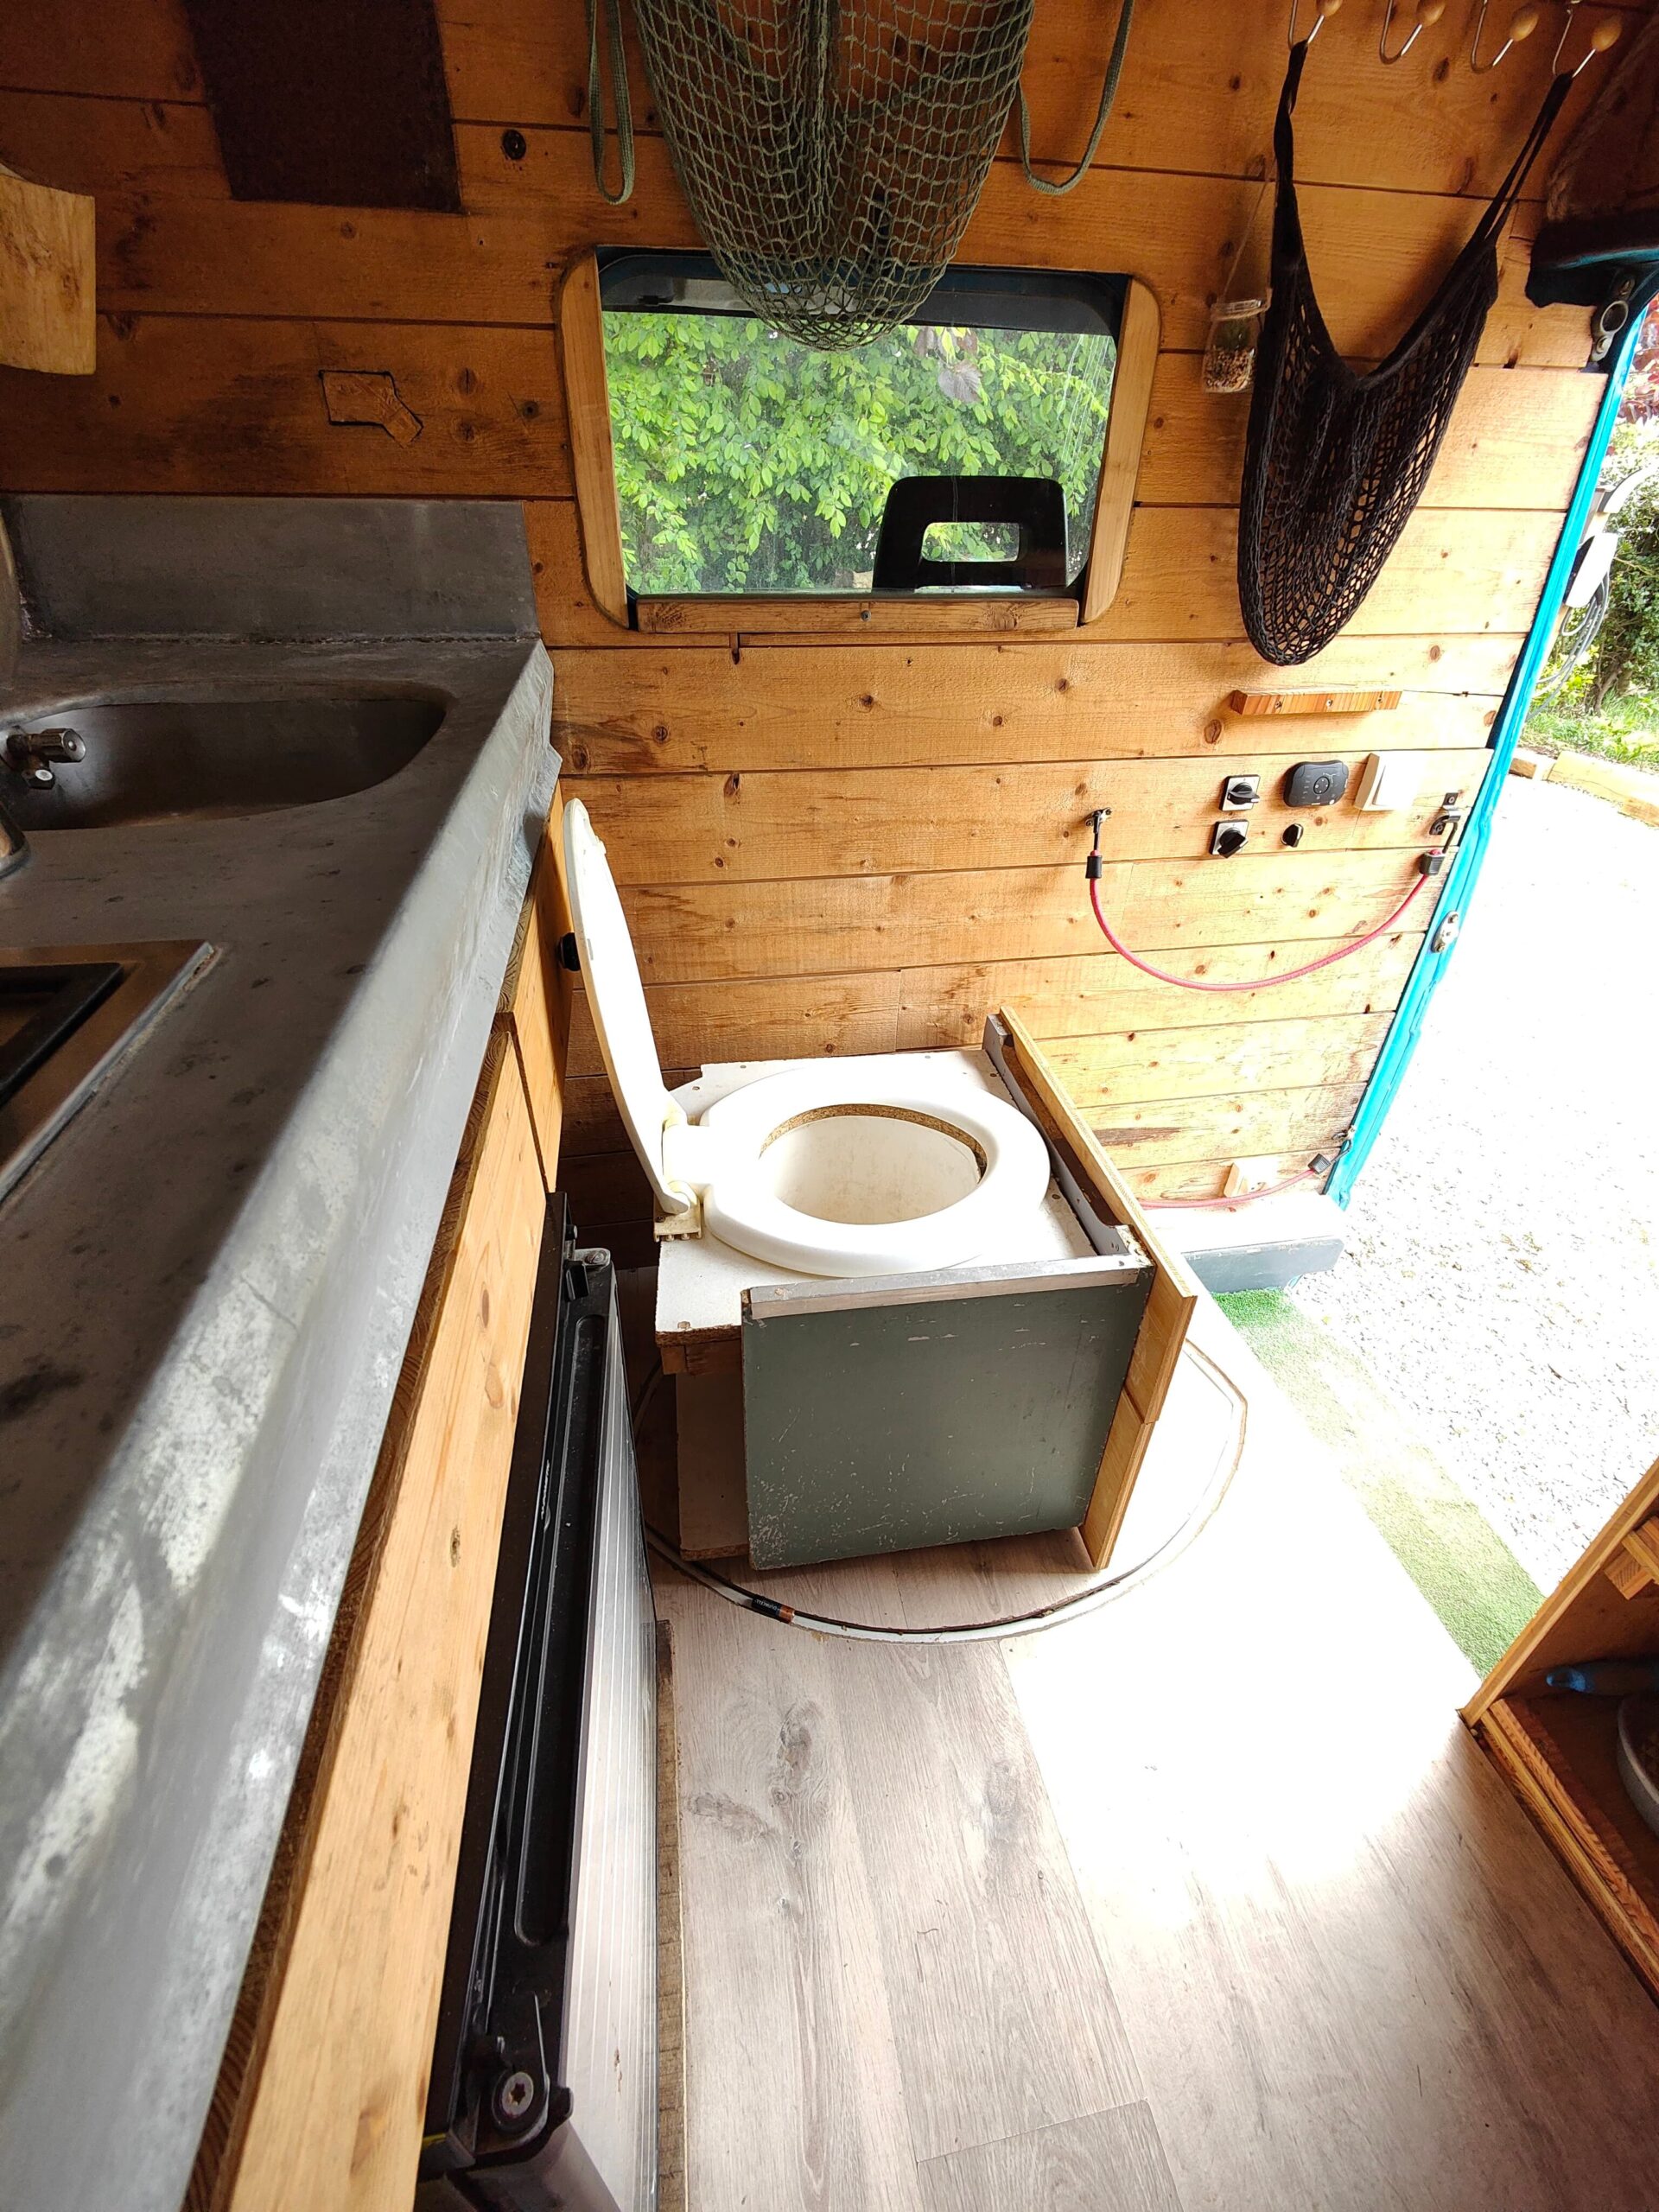 Toilette de camping portable - 7 litres - Gris - Hauteur d'assise : 33 cm